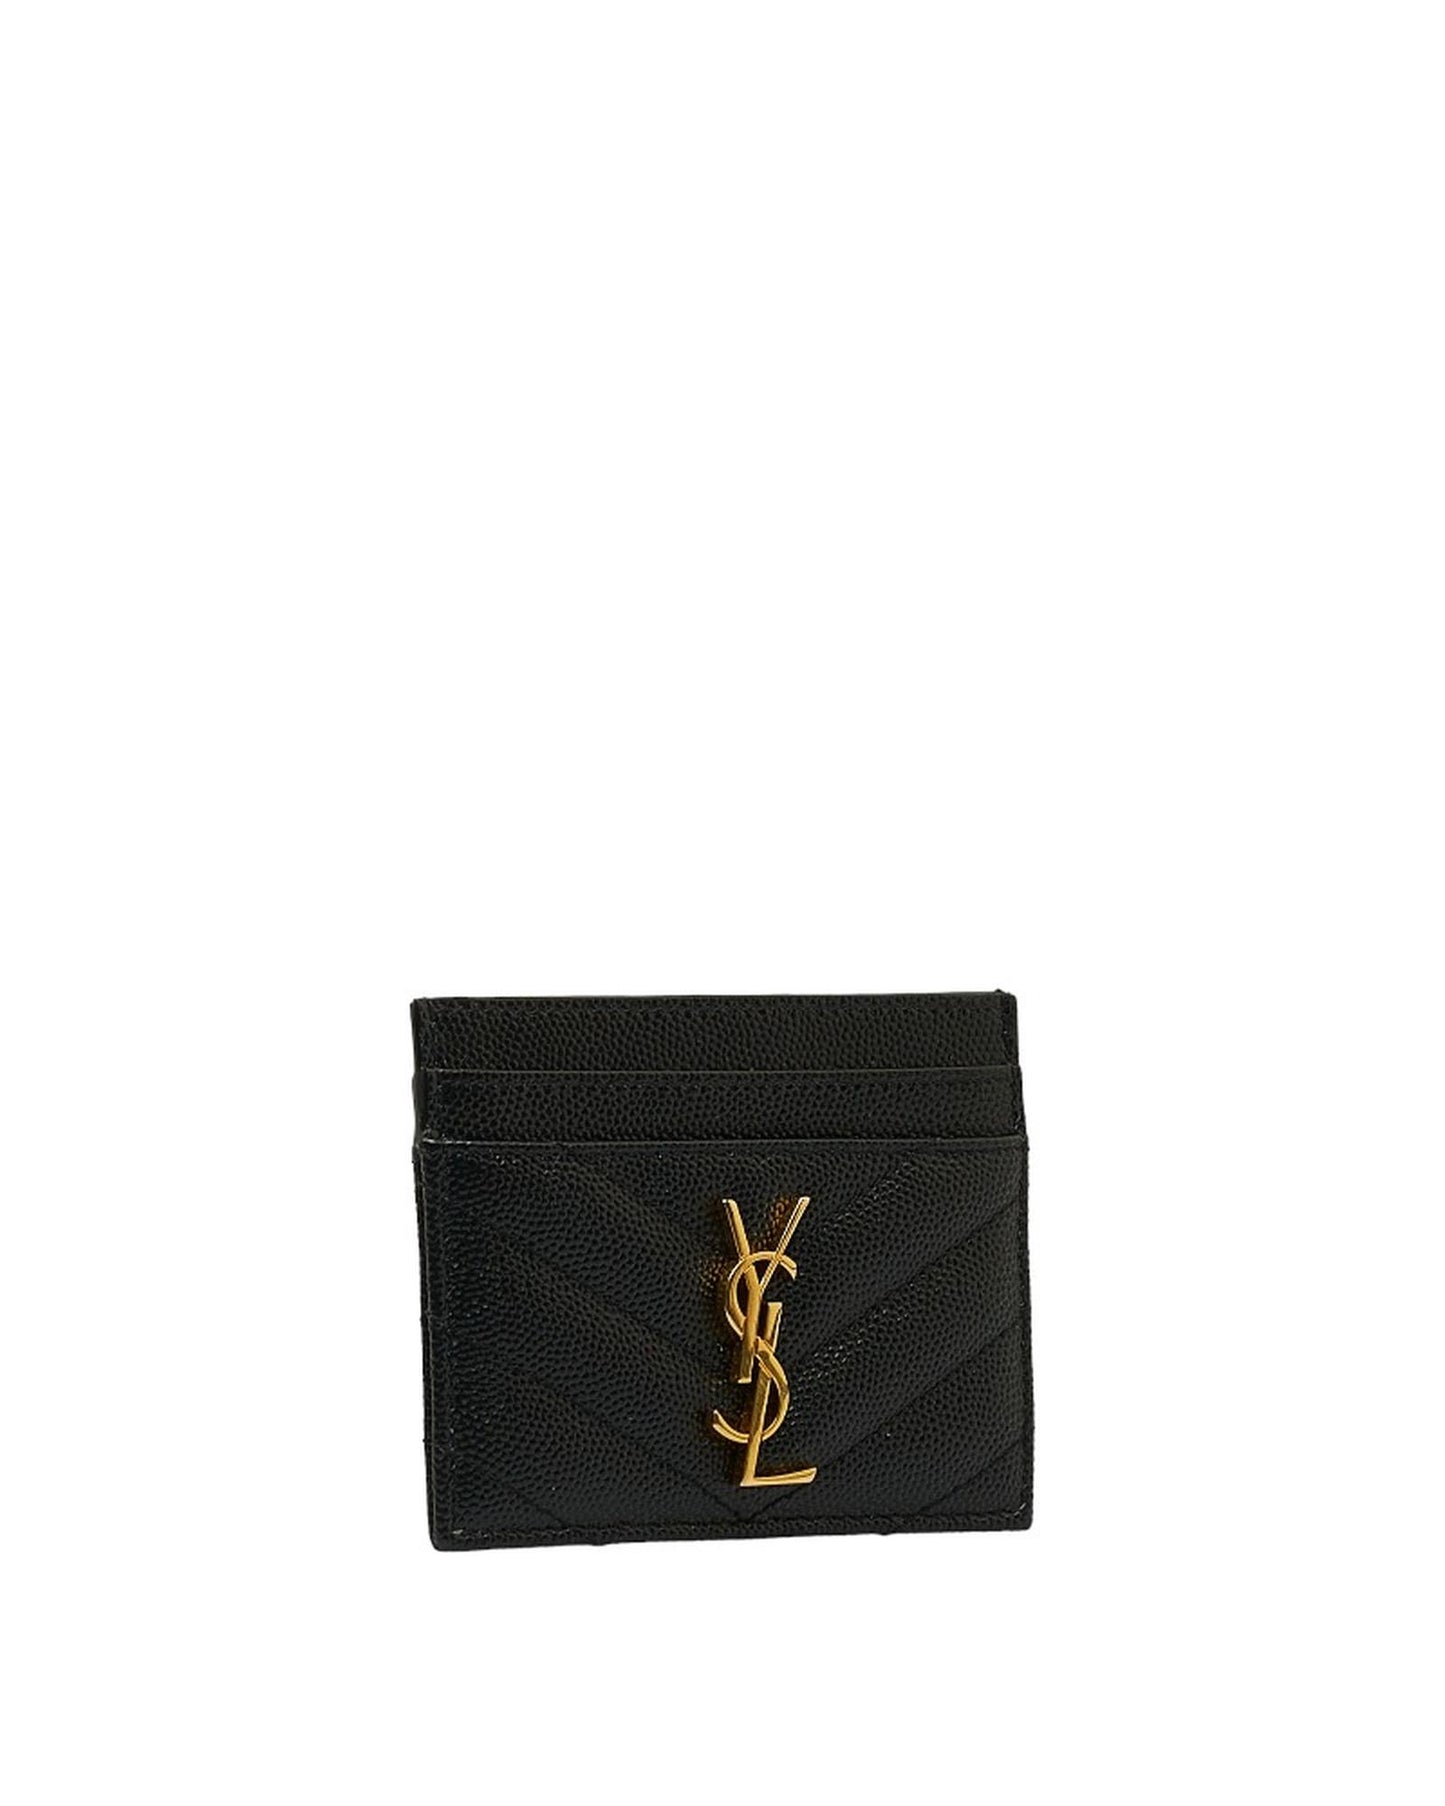 Yves Saint Laurent Women's Black Logo Card Case Wallet by Yves Saint Laurent in Black